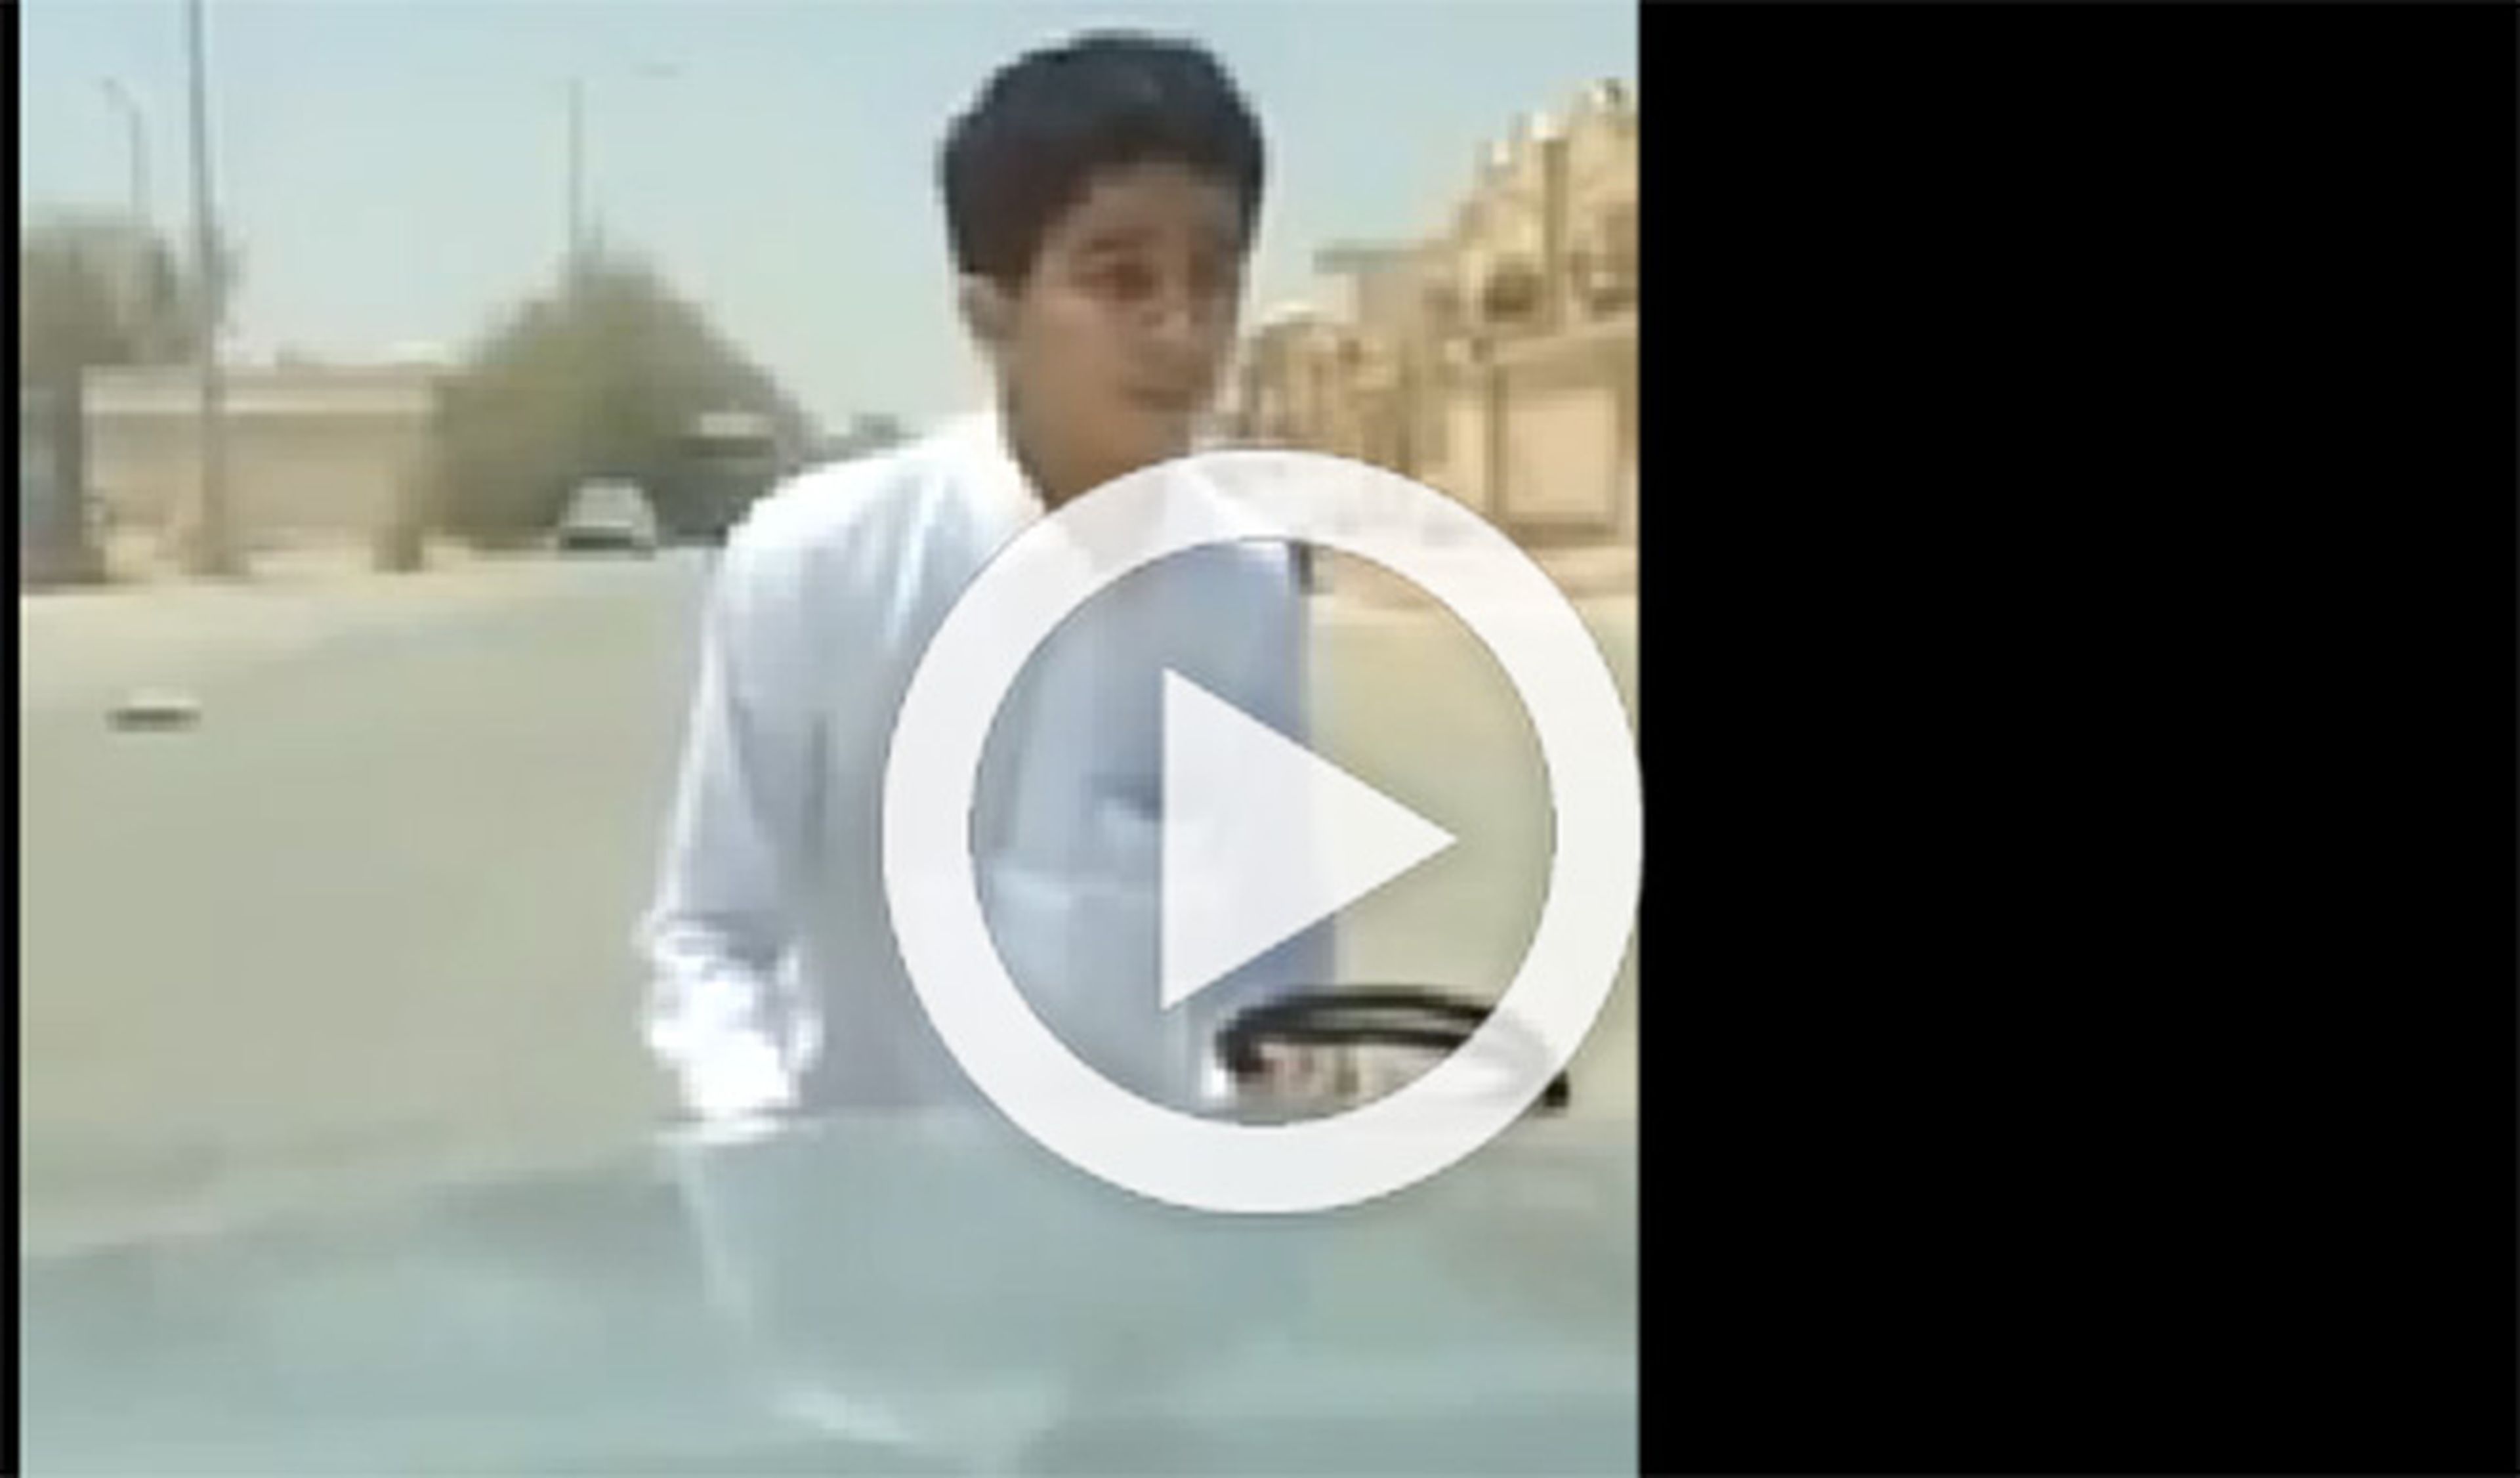 Vídeo: un niño empotra el coche de su padre en una pared